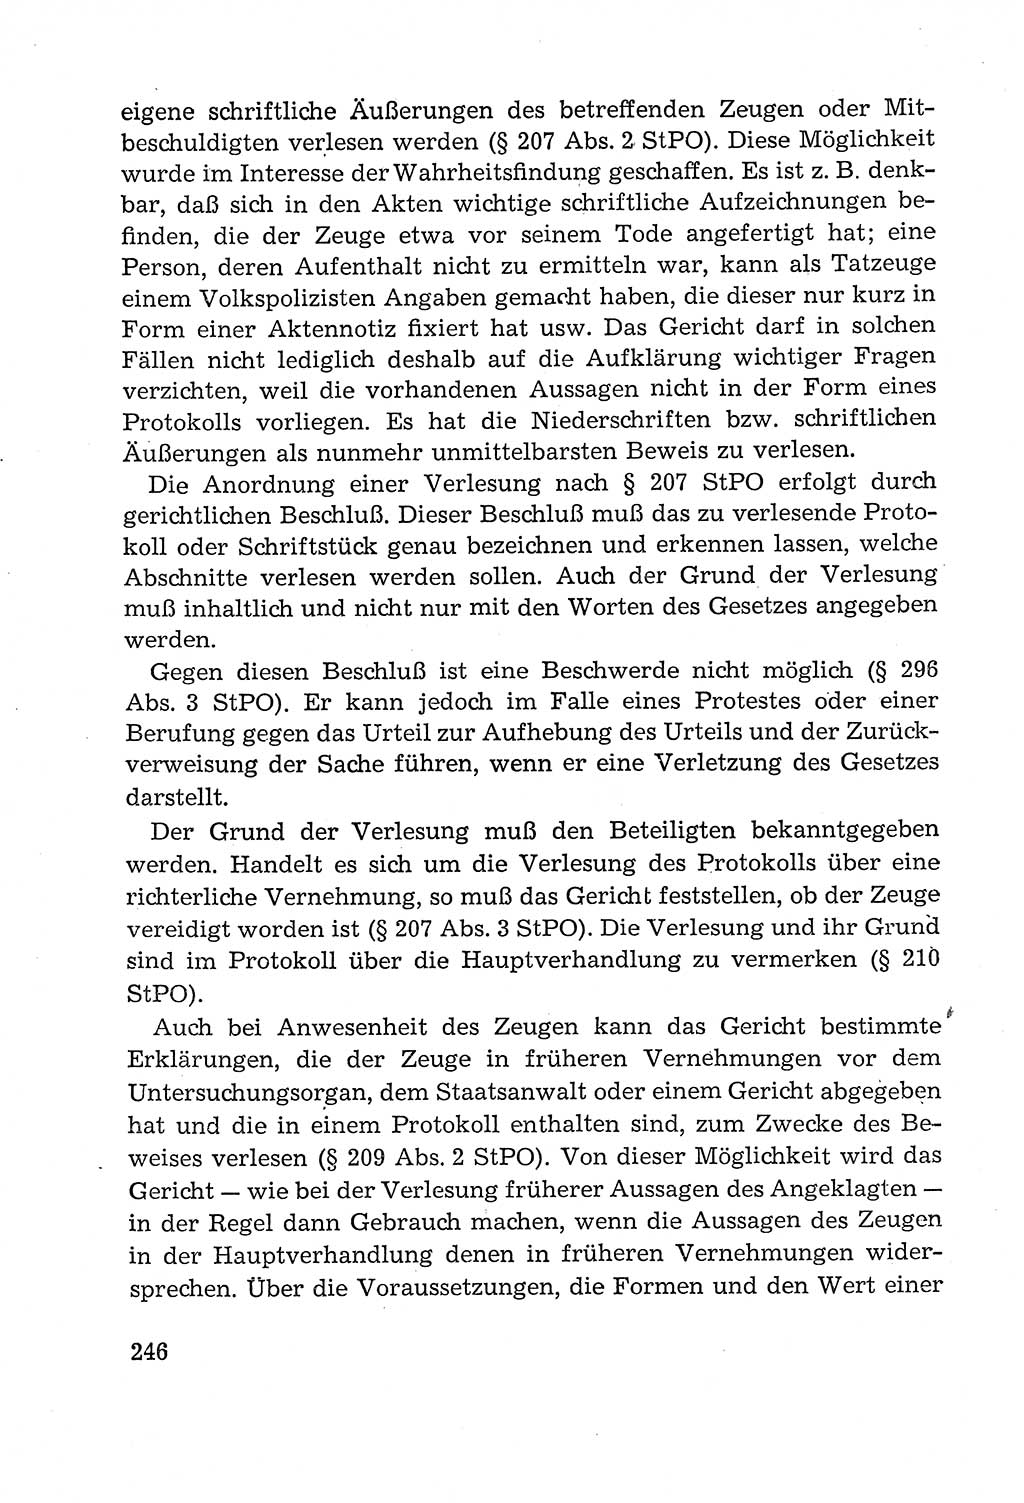 Leitfaden des Strafprozeßrechts der Deutschen Demokratischen Republik (DDR) 1959, Seite 246 (LF StPR DDR 1959, S. 246)